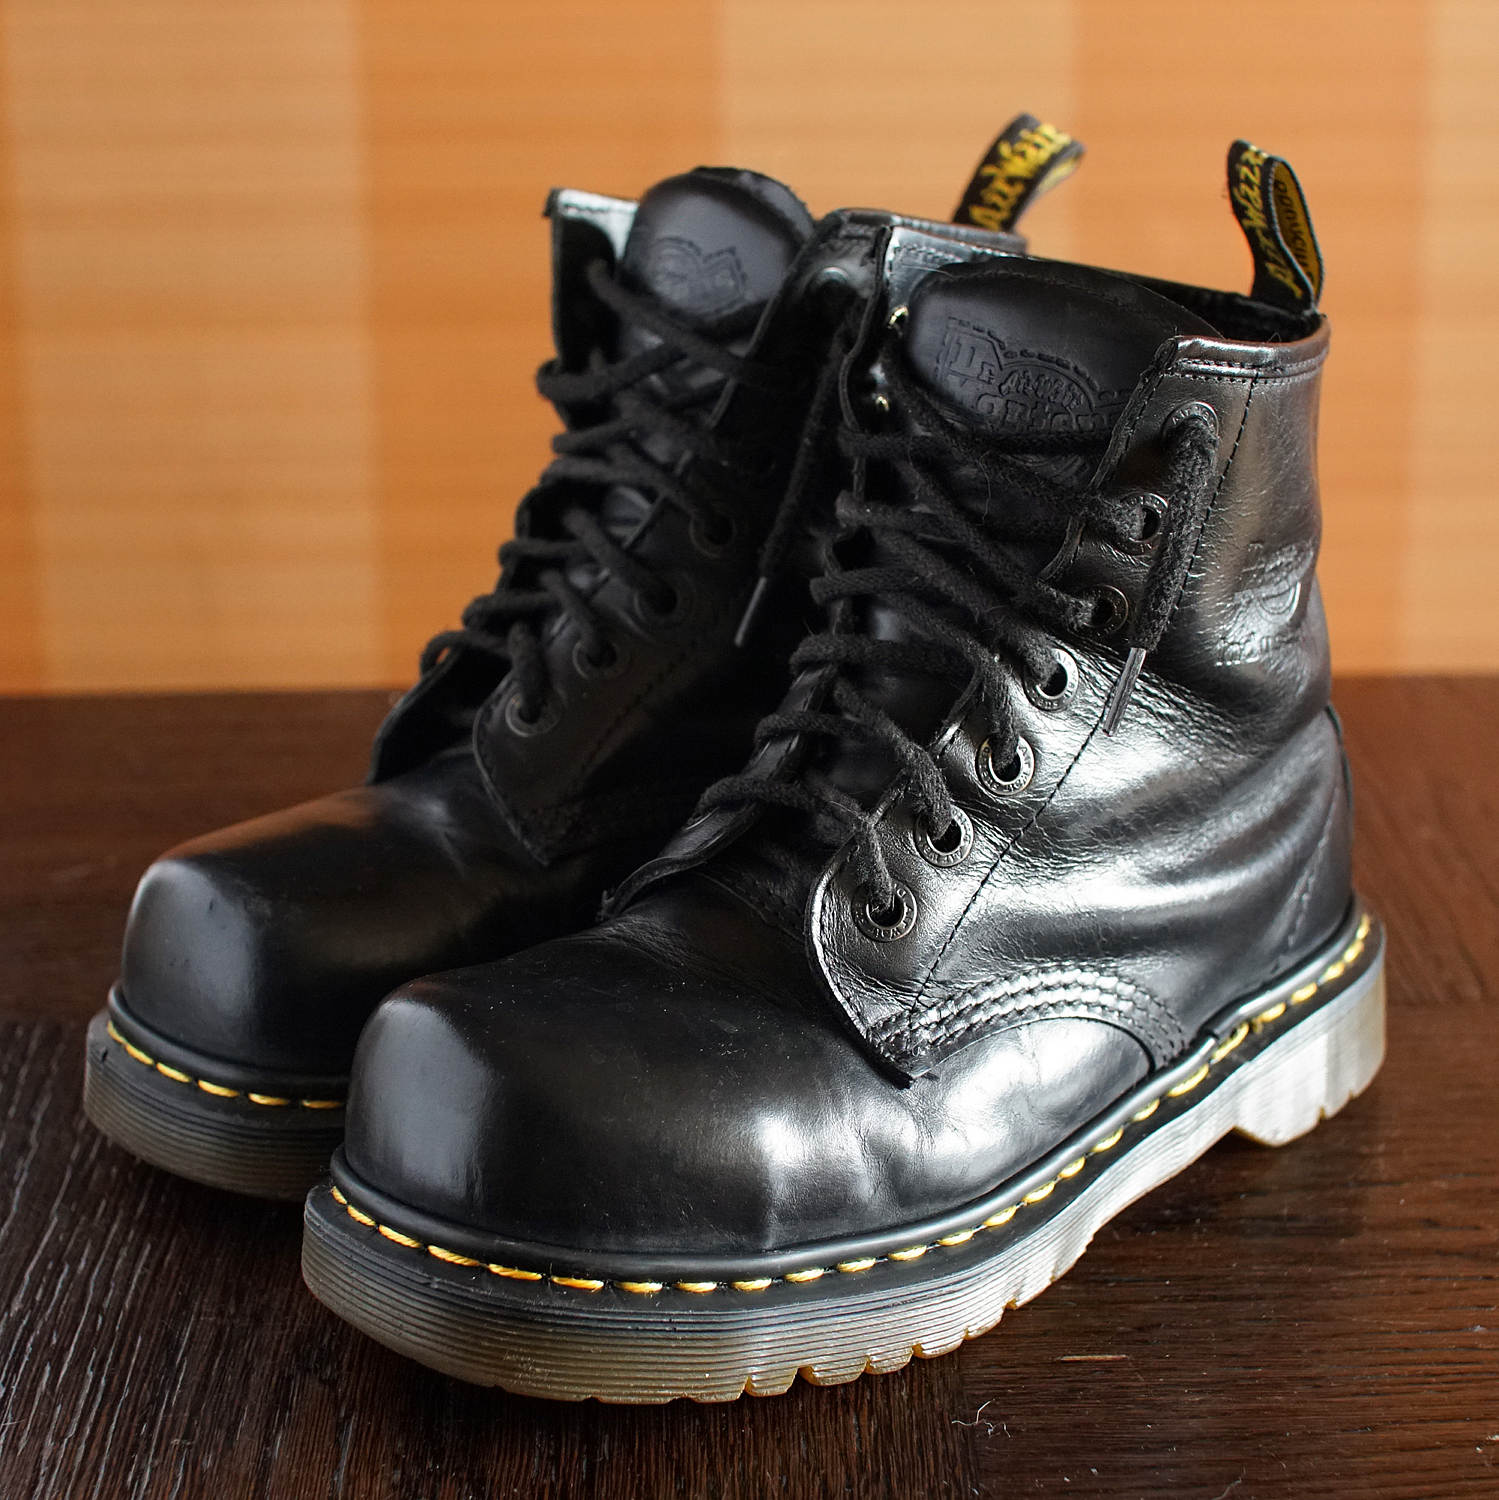 Dr Martens Steeltoe INDUSTRIAL platform vintage boots 7eylet | Etsy